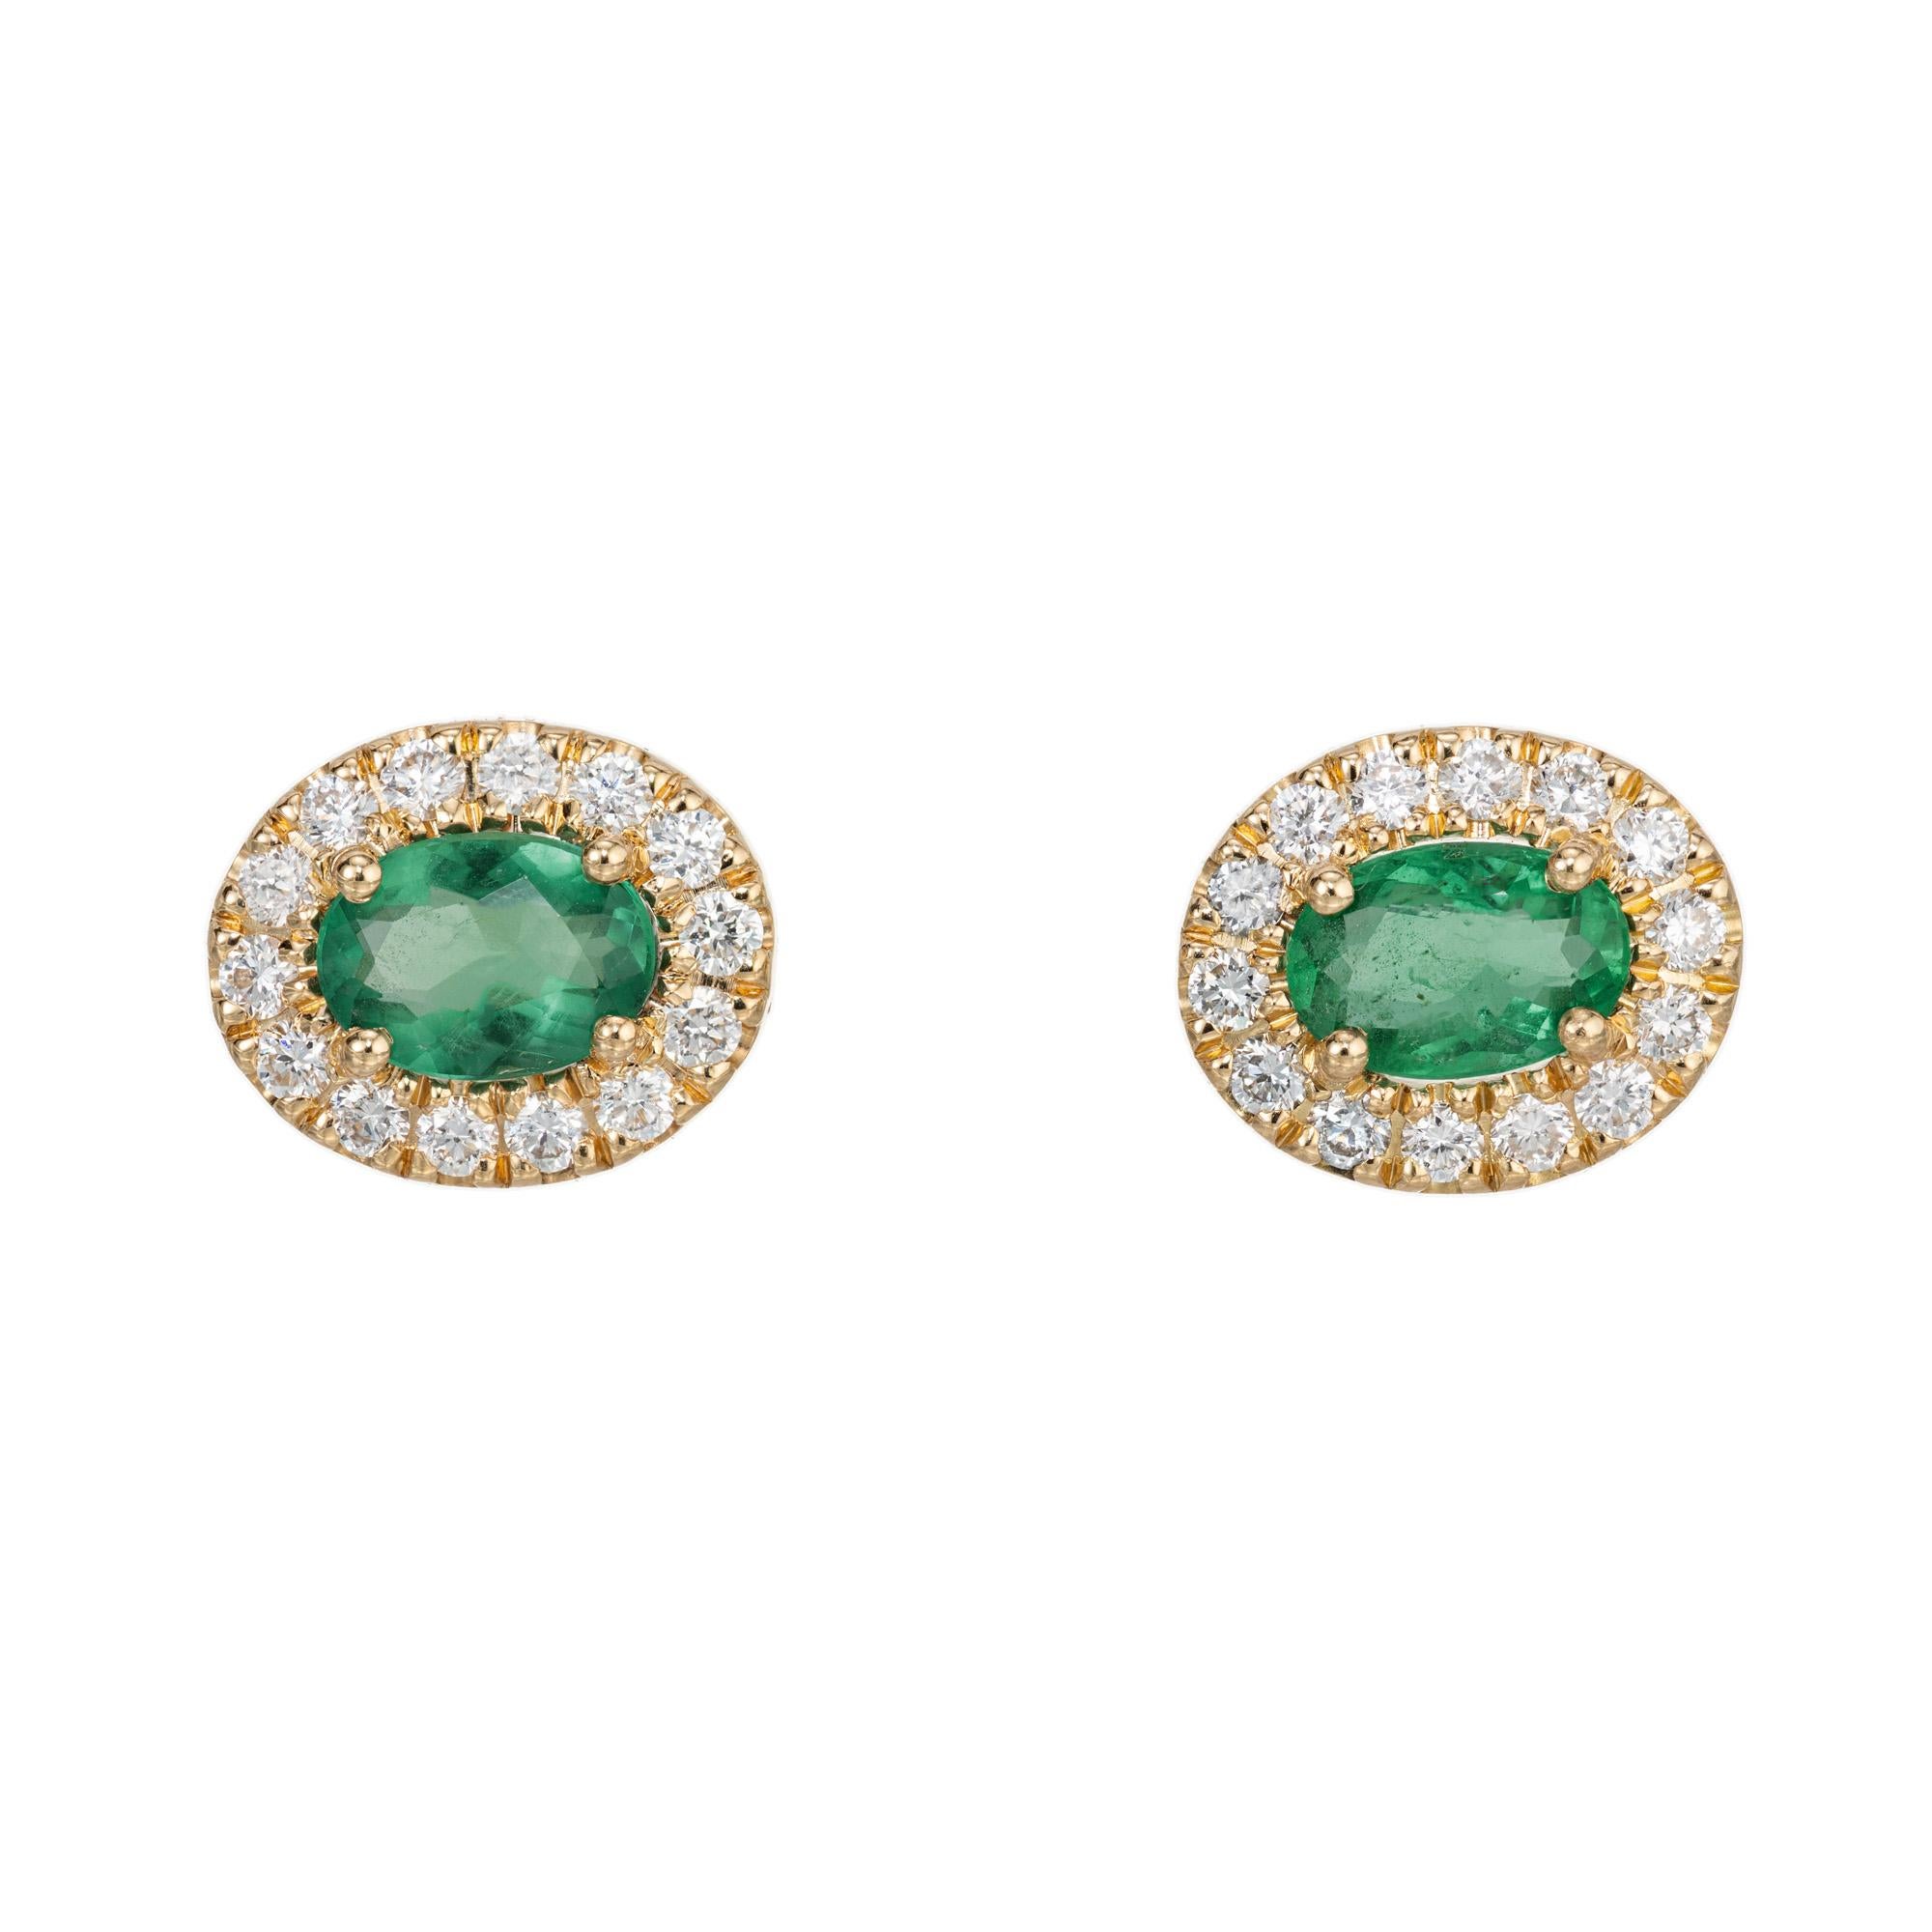 Smaragd und Diamant-Ohrring. 2 ovale hellgrüne Smaragde mit insgesamt 0,81 ct. in einer Fassung aus 18 Karat Gelbgold. Jeder Edelstein ist mit einem Halo aus 14 runden weißen Diamanten im Brillantschliff besetzt. Entworfen und hergestellt in der